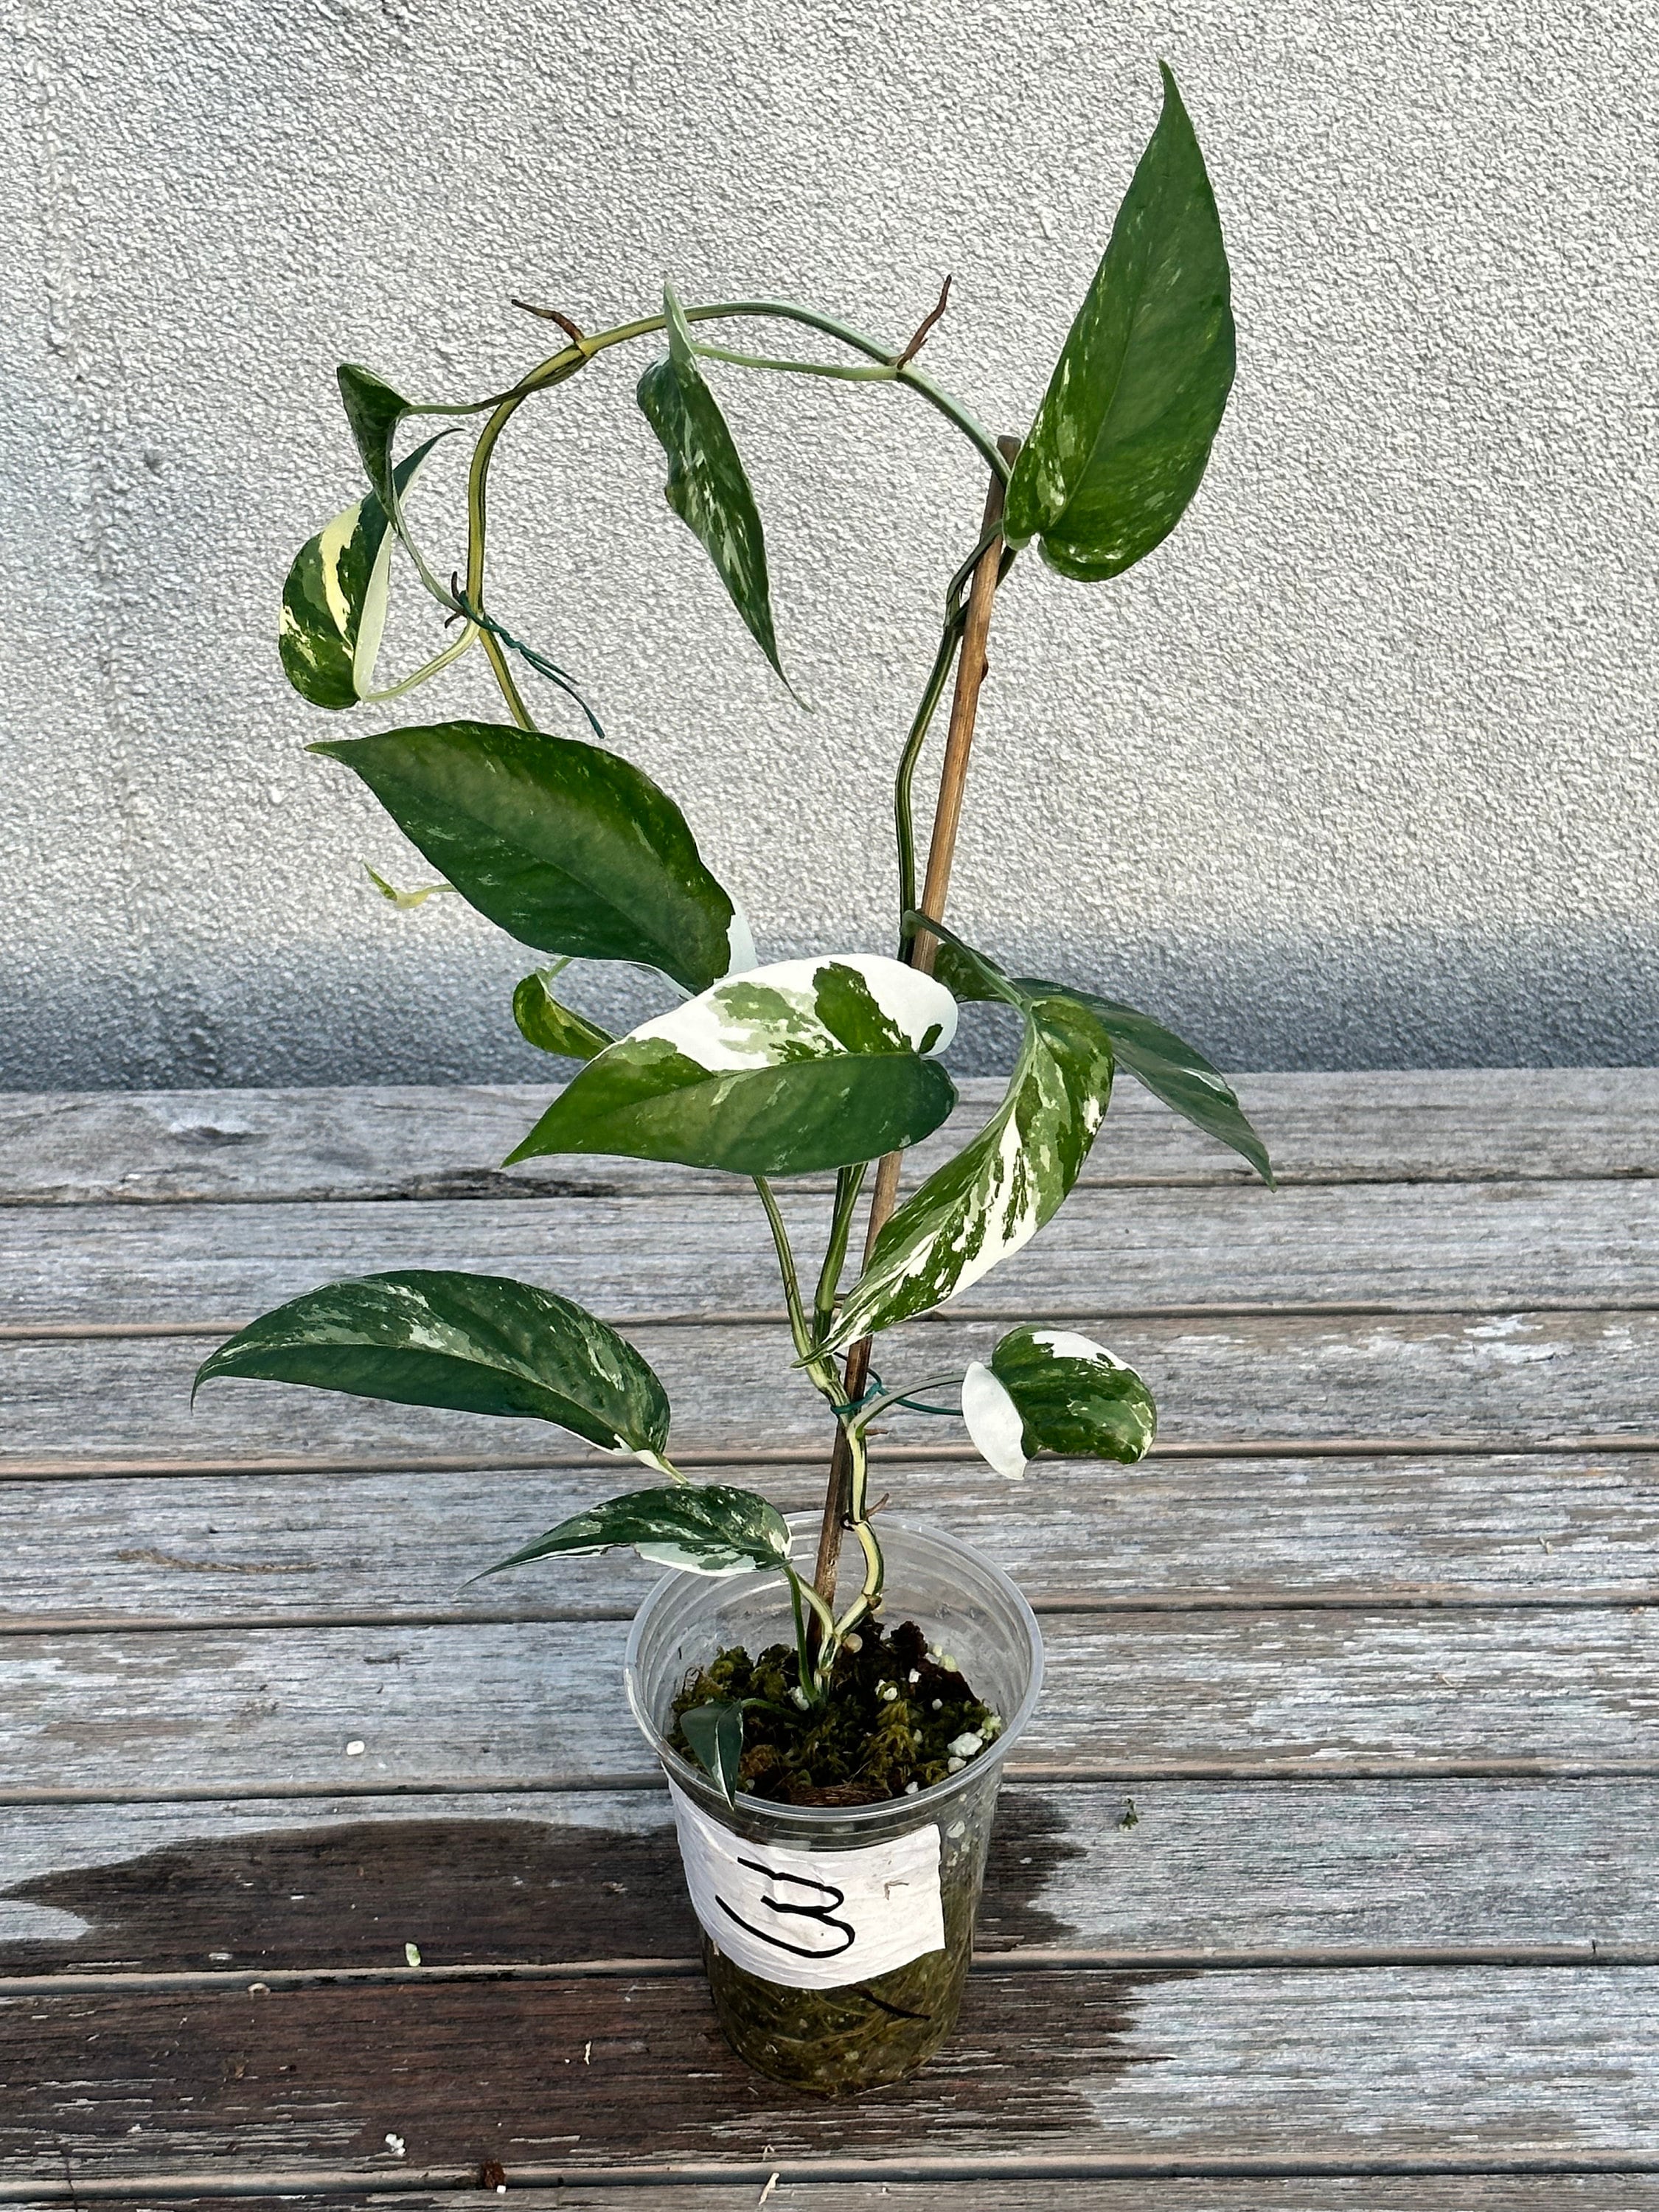 Epipremnum pinnatum 'Albo Variegata' (Grower's Choice)